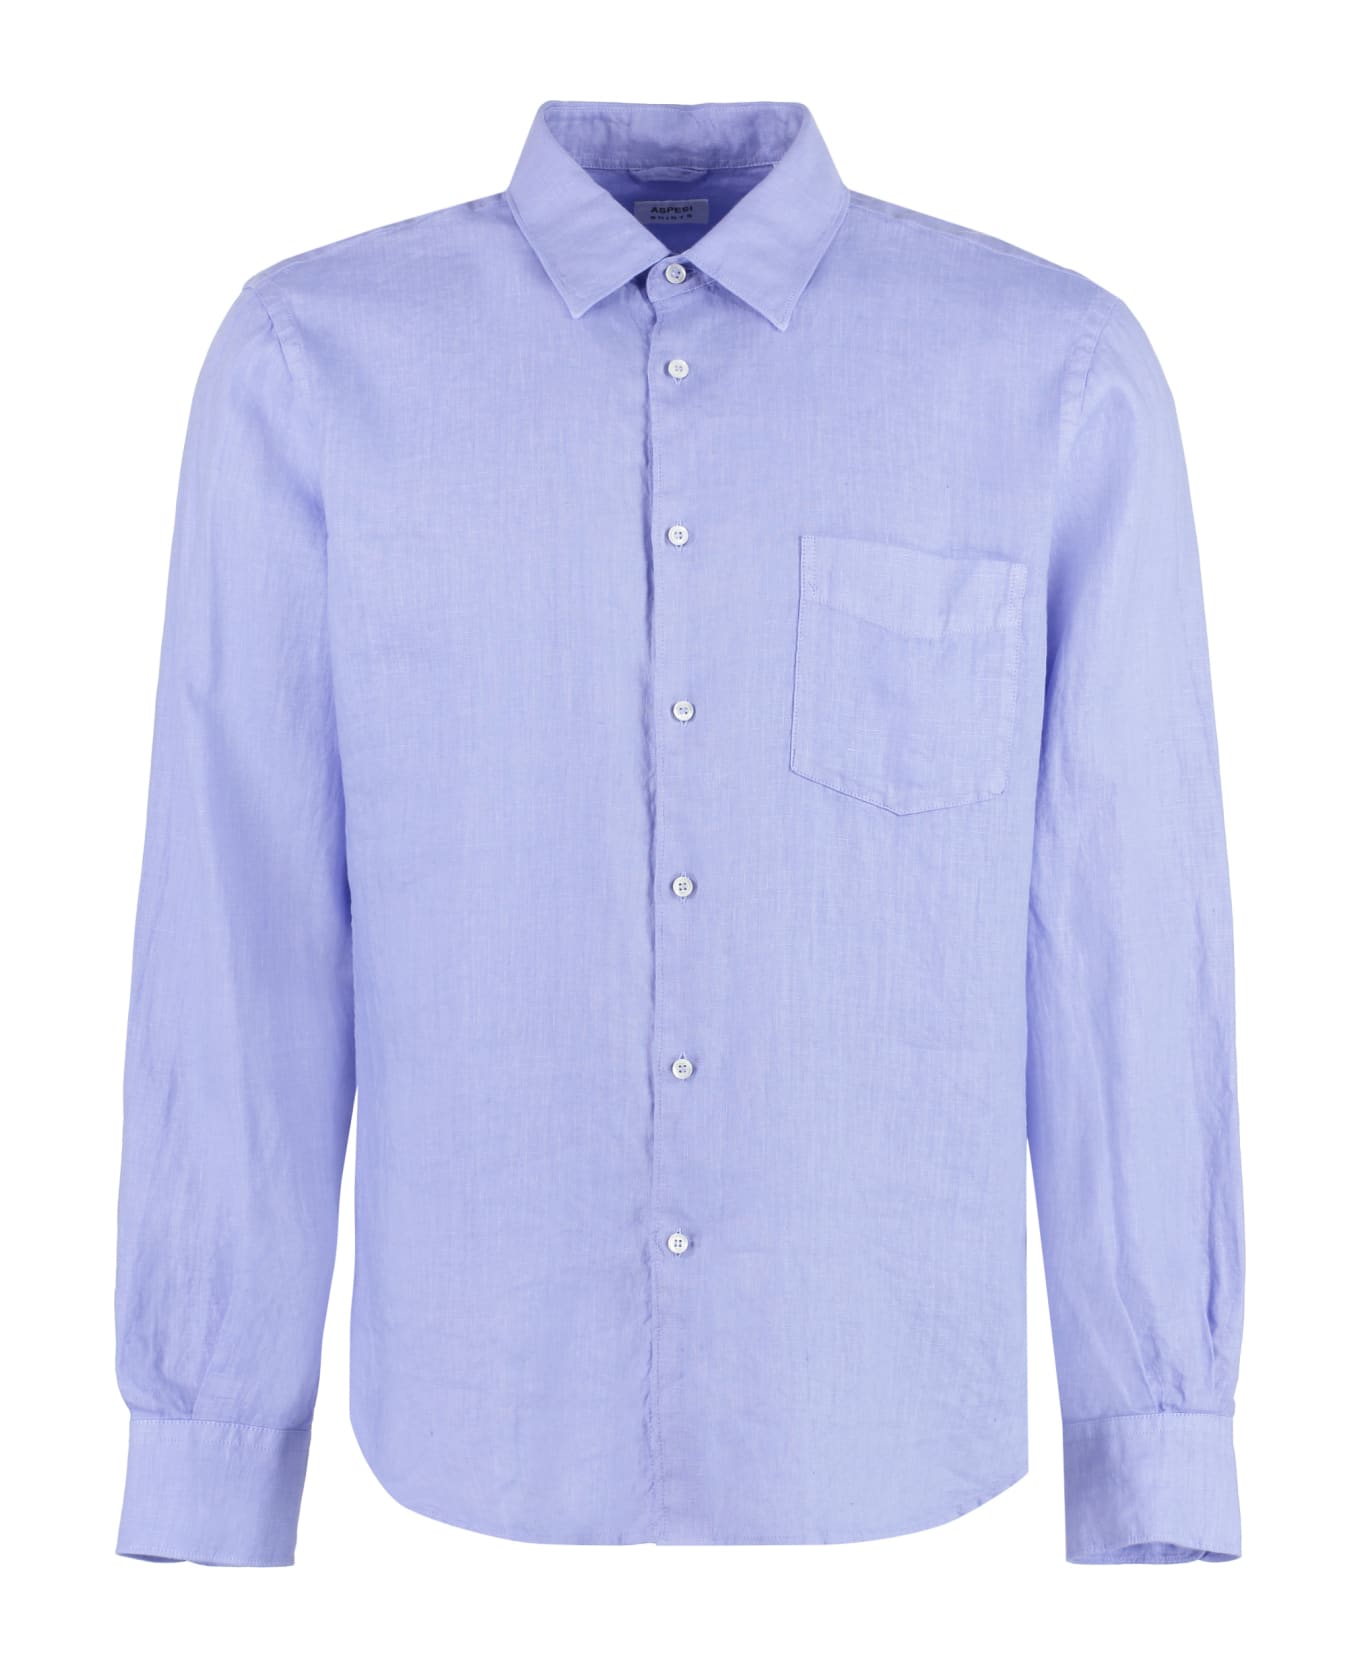 Aspesi Linen Shirt - Light Blue